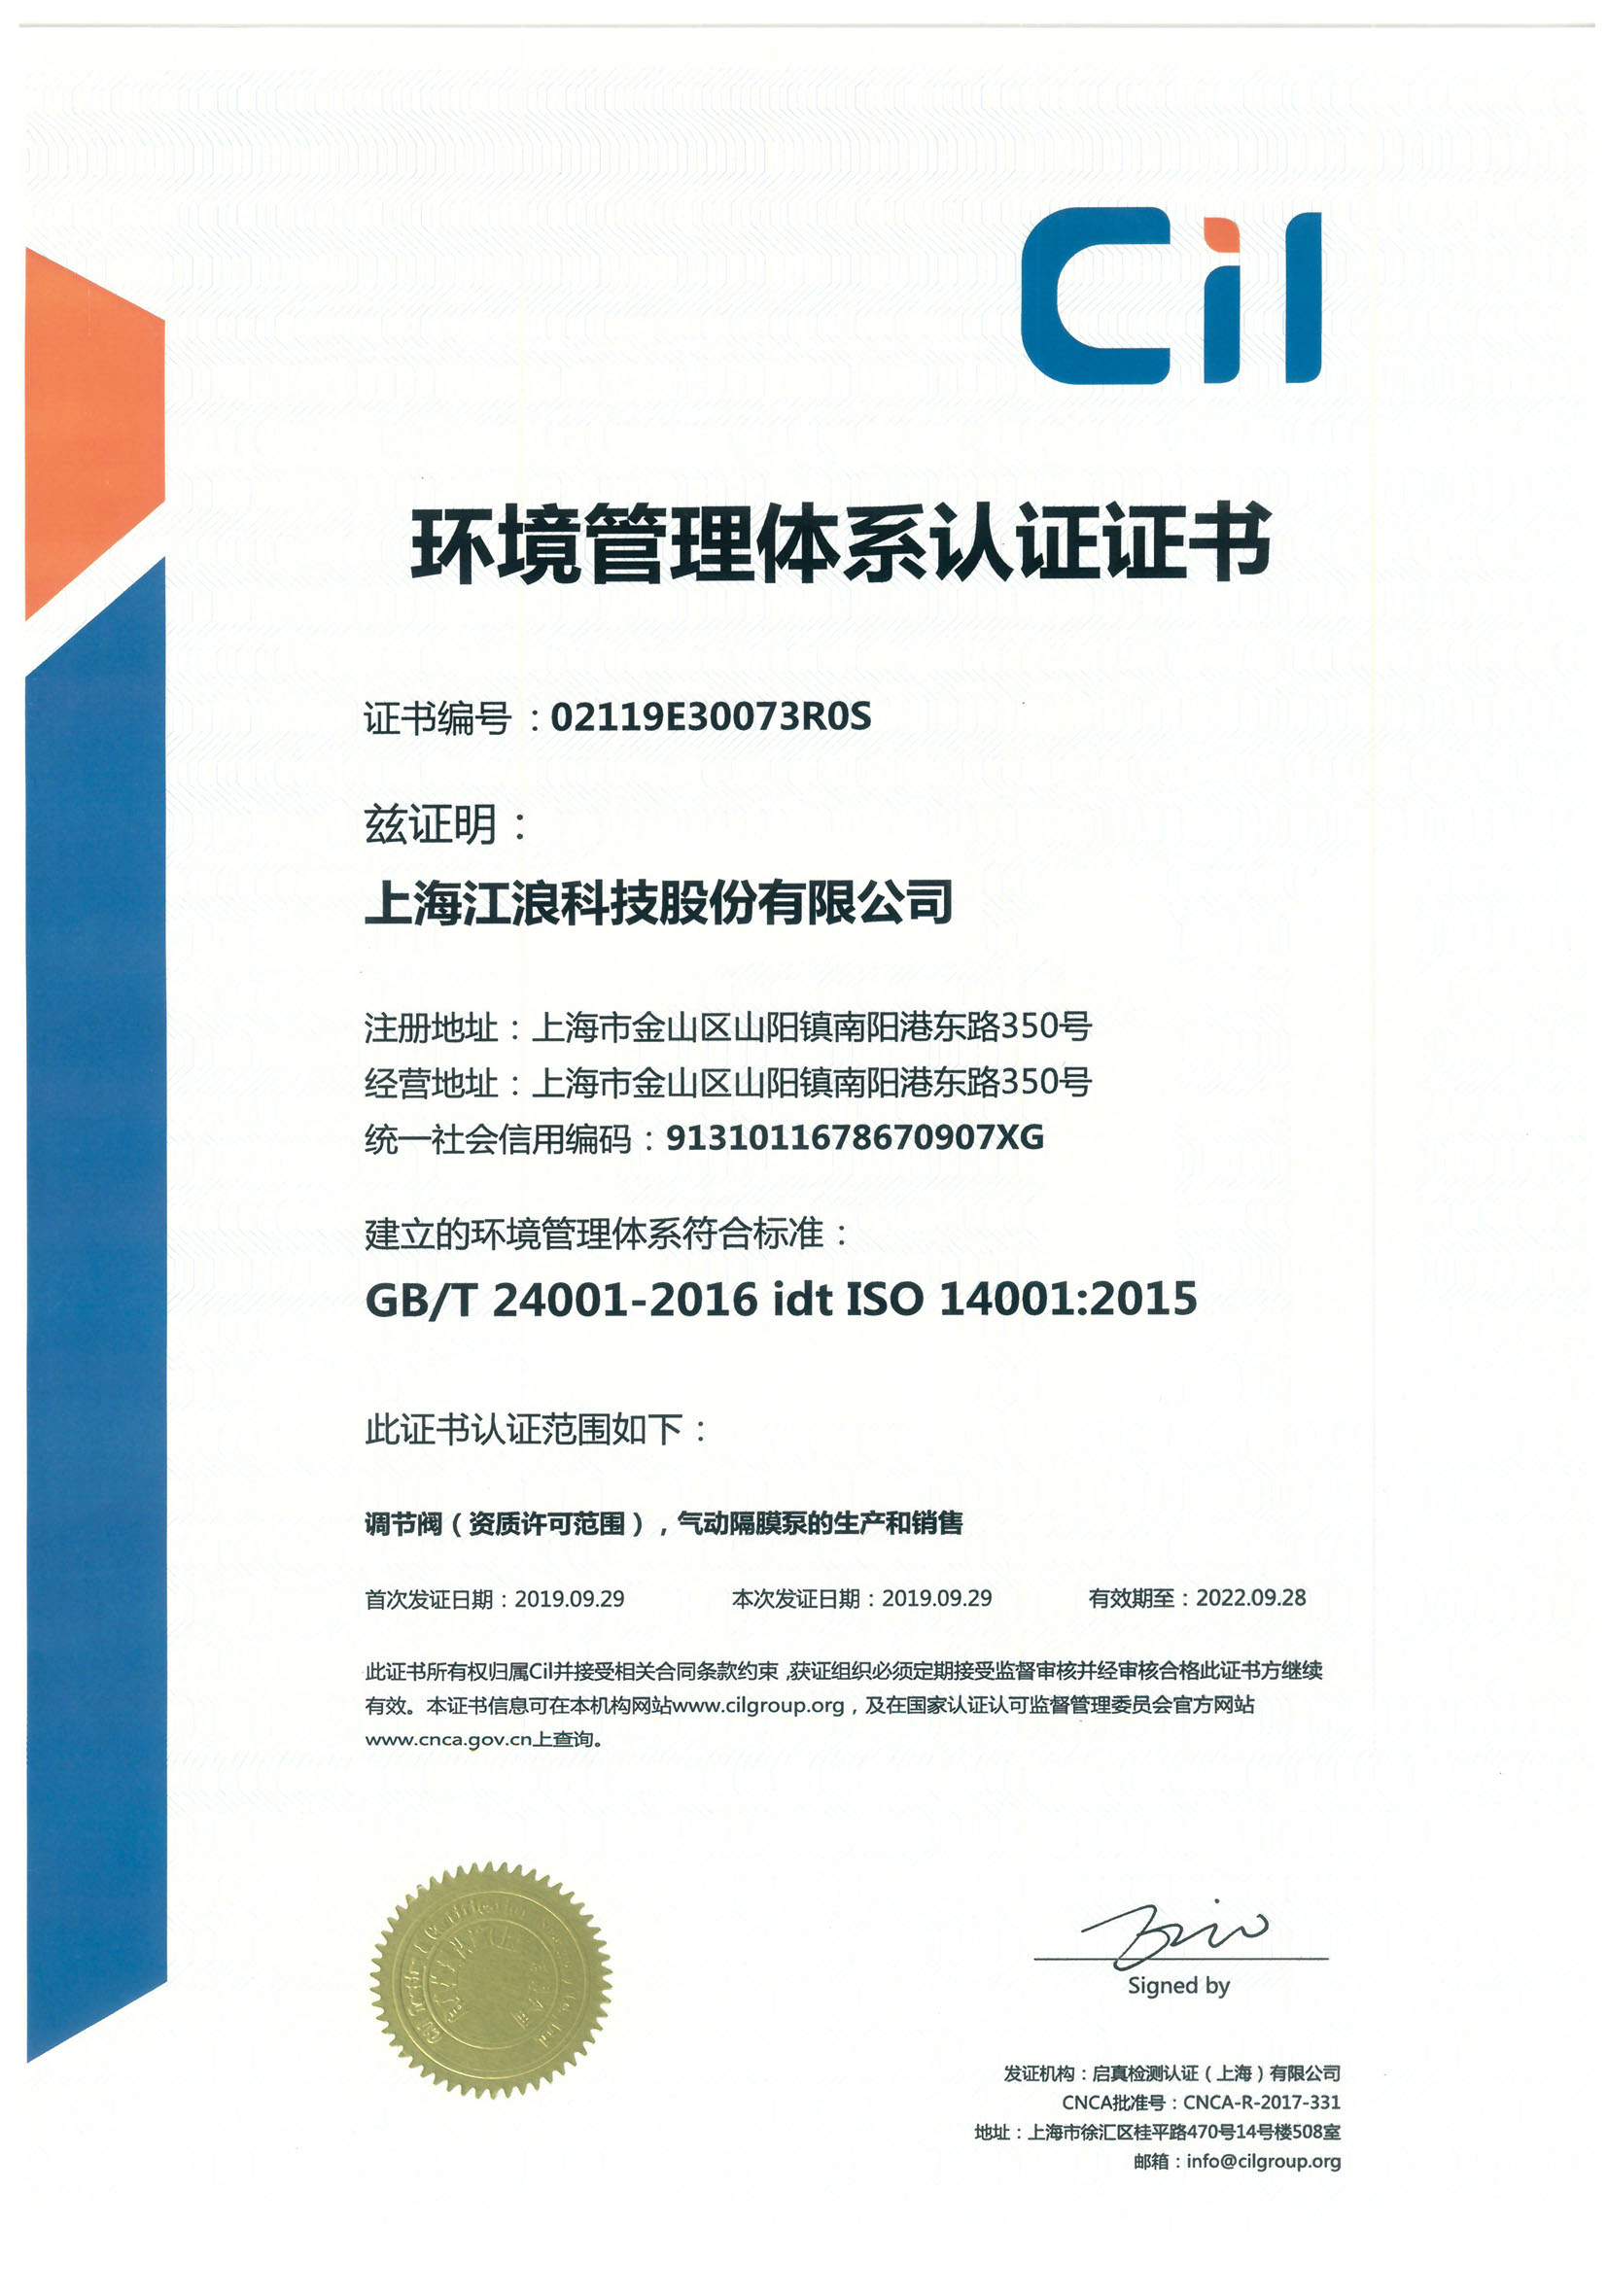 江浪科技 环境管理体系认证